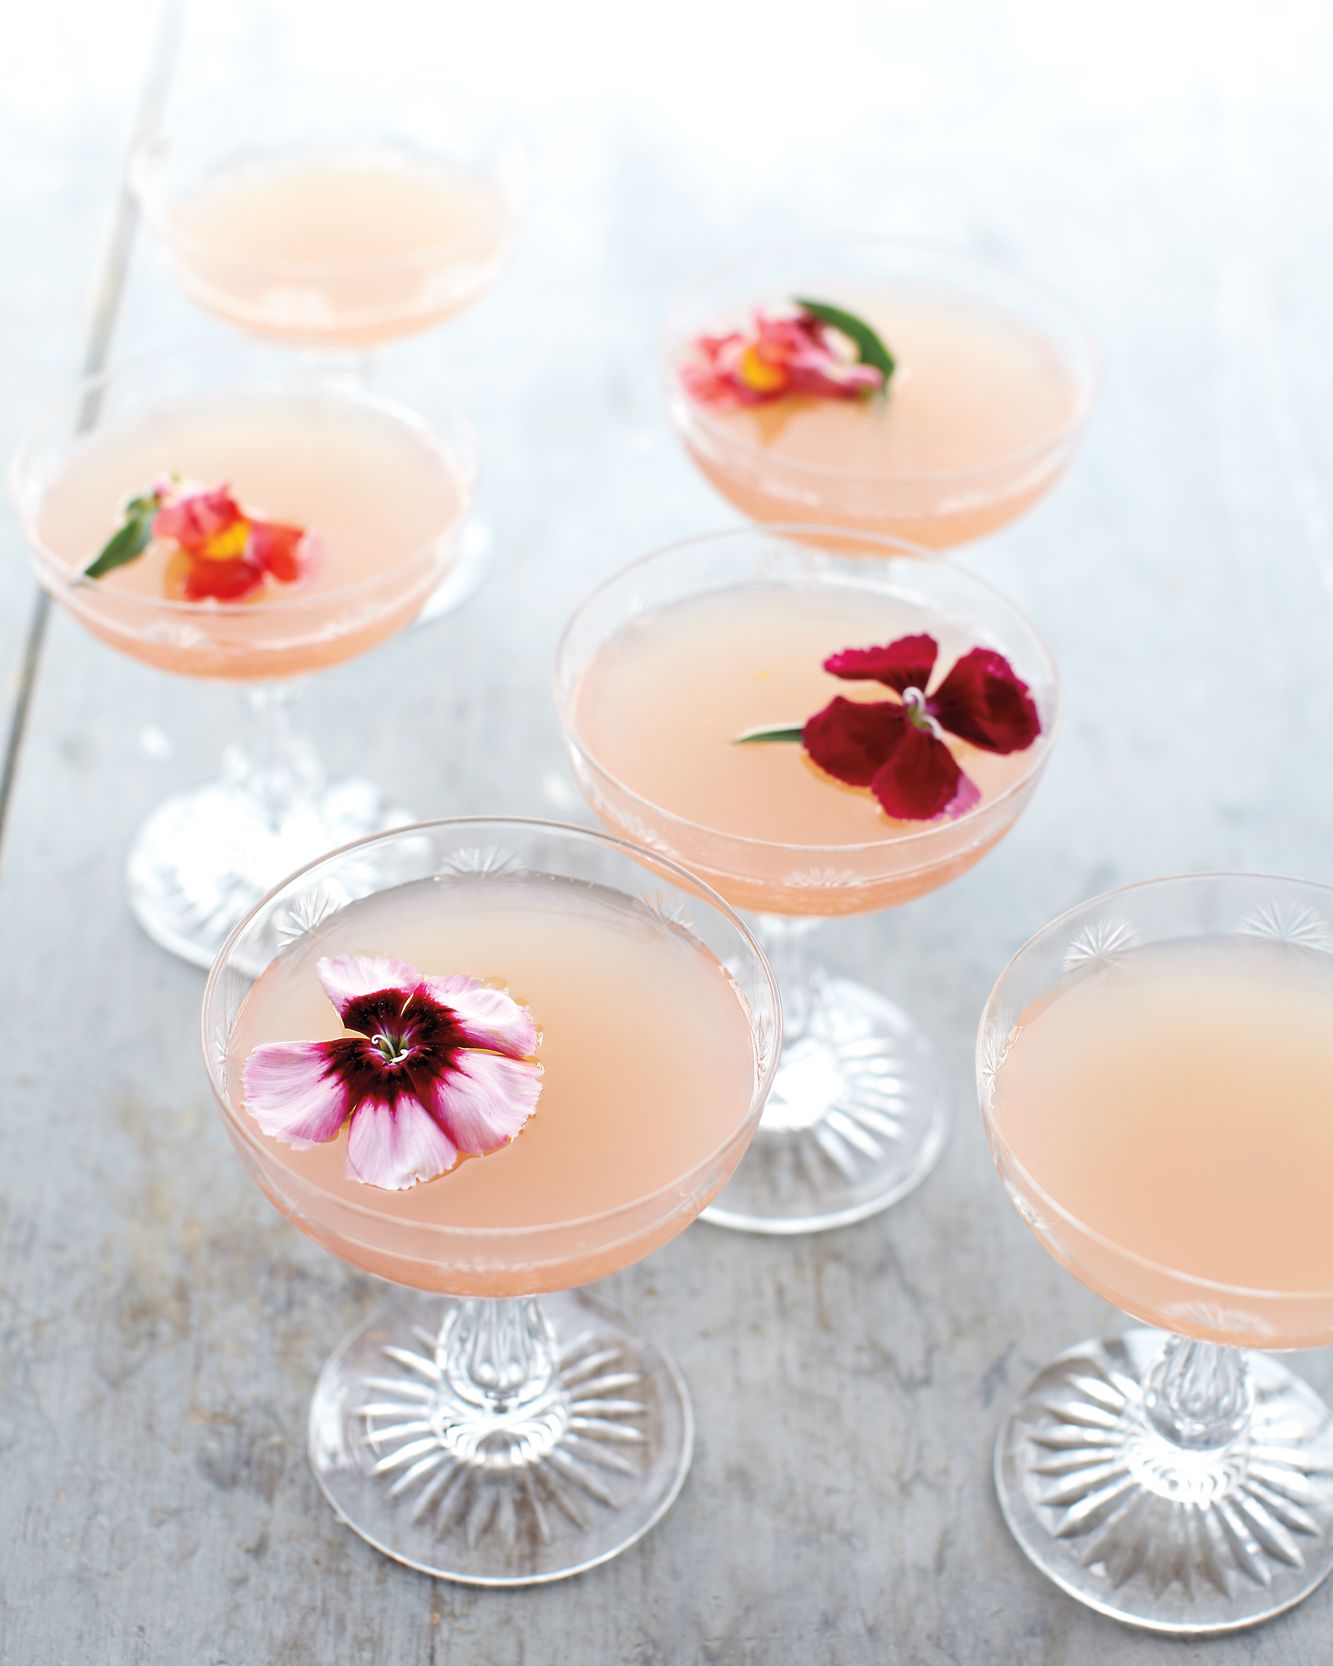 lillet-rose-cocktails-mld108276.jpg